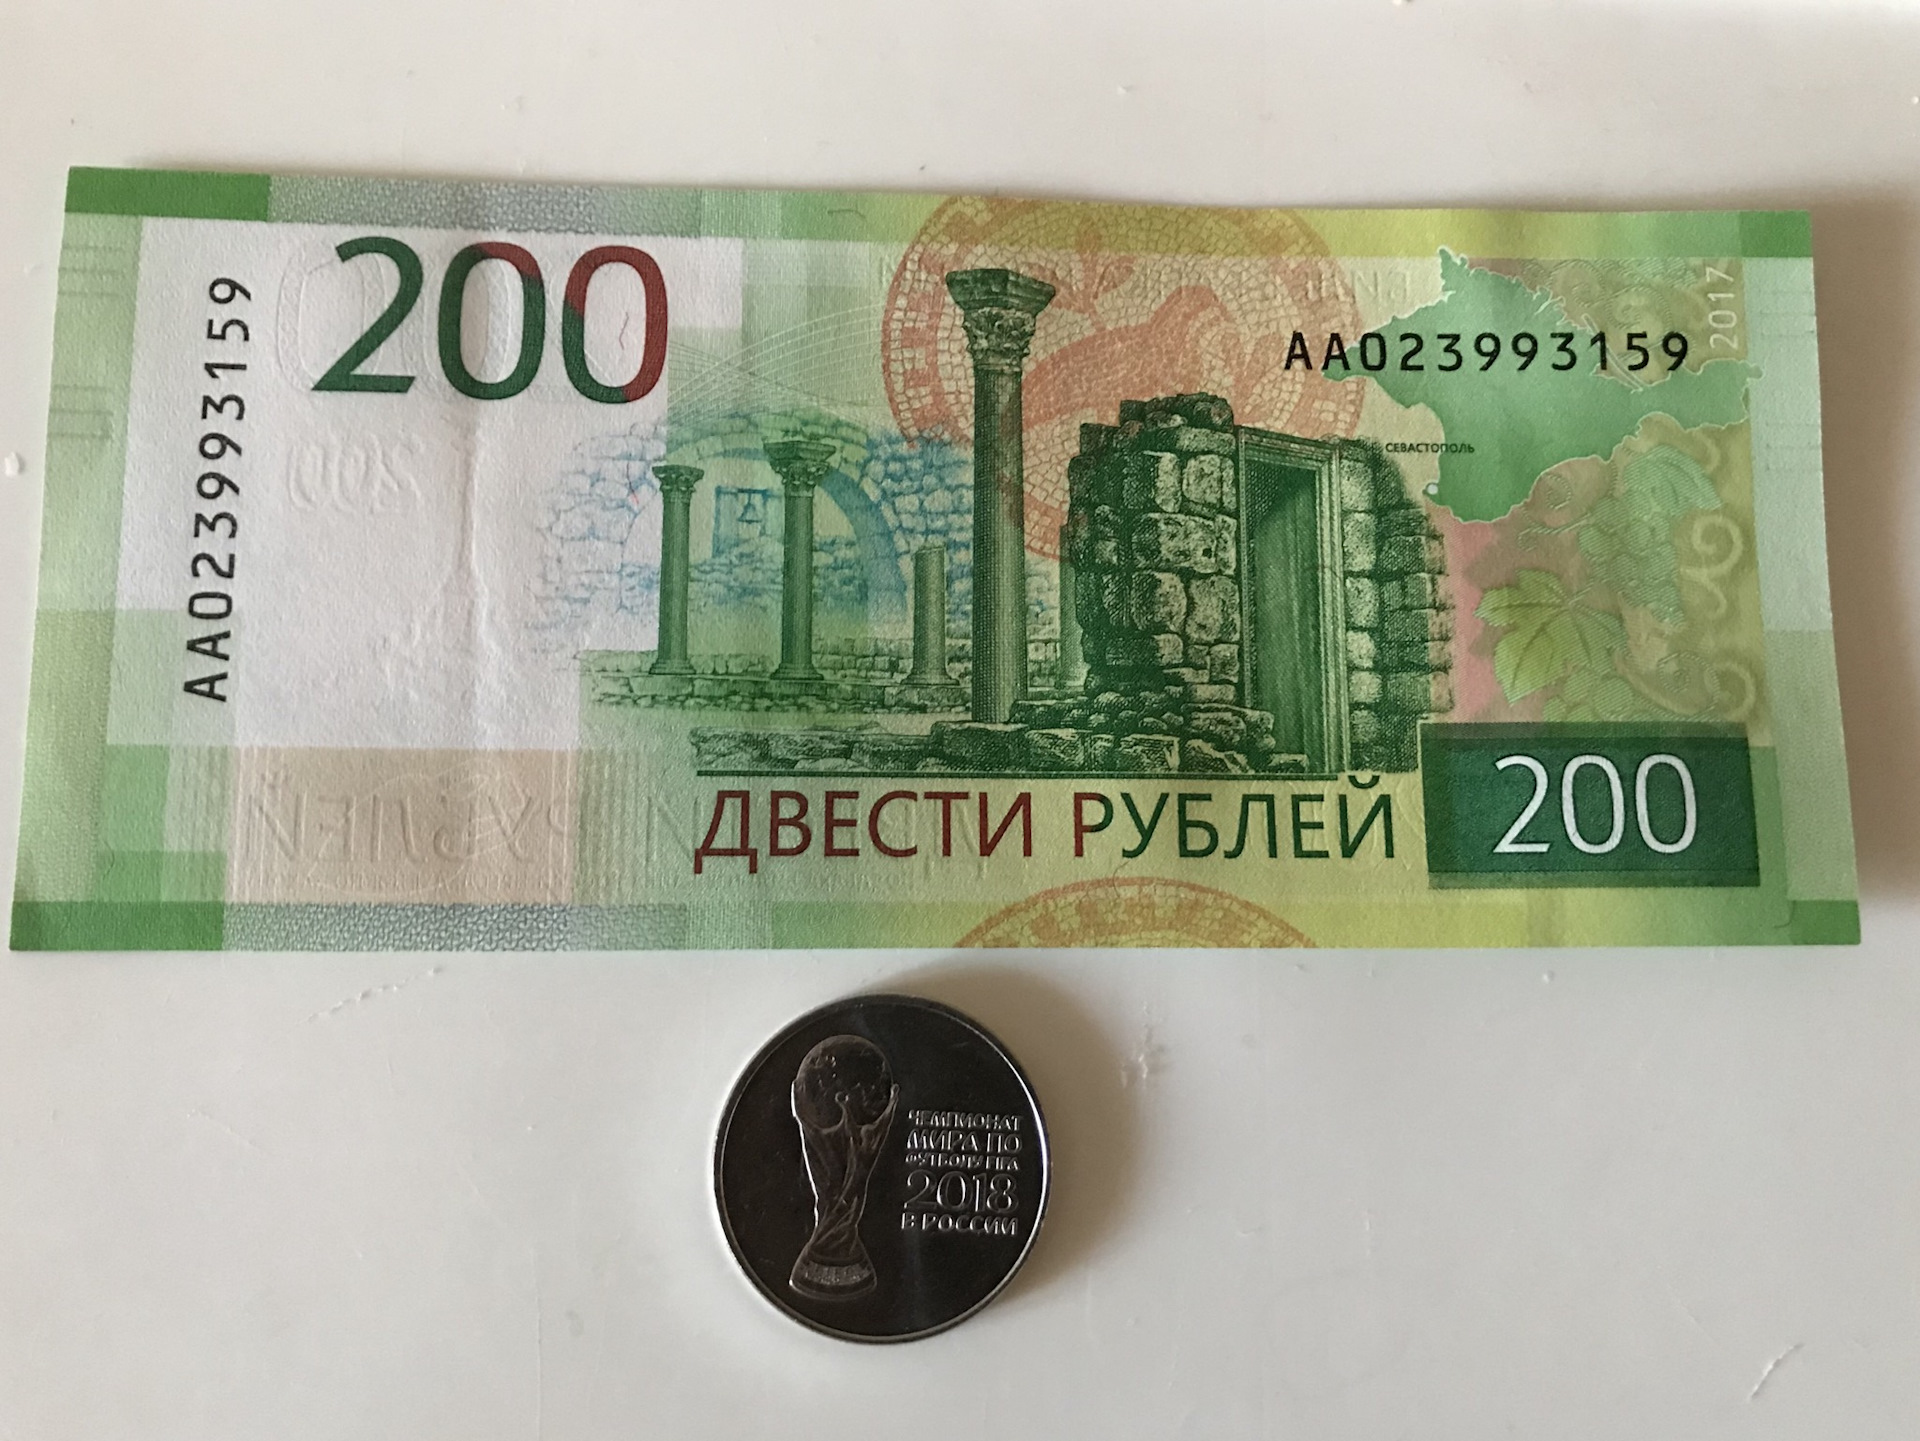 200 рублей попросить. 200 Рублей. 200 Рублей юбилейные. Двести рублей юбилейные. Памятные 200 руб.